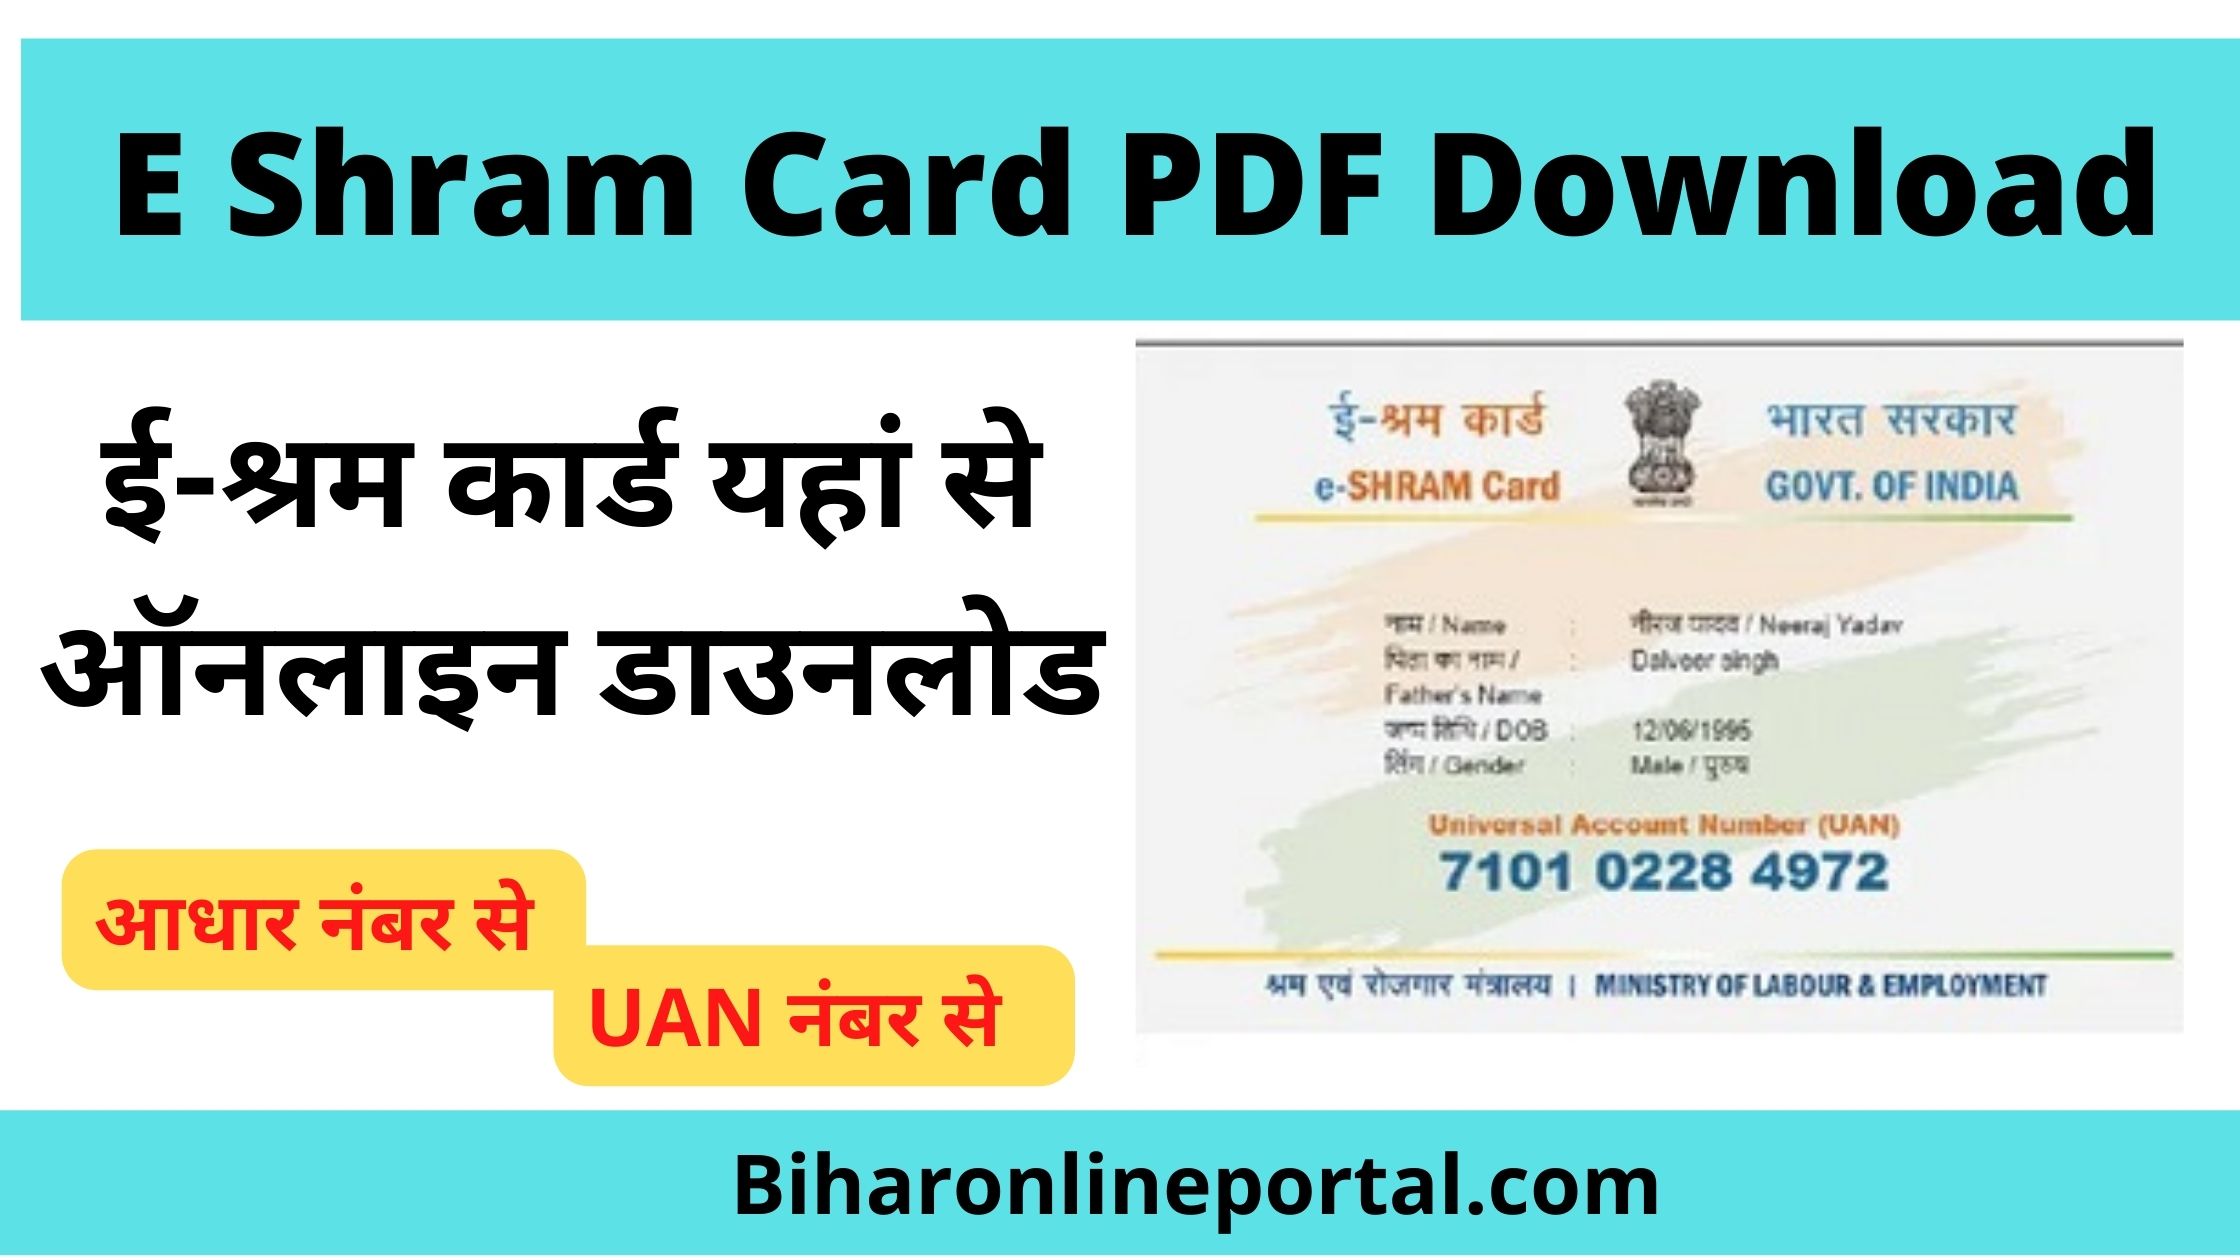 E Shram Card PDF Download